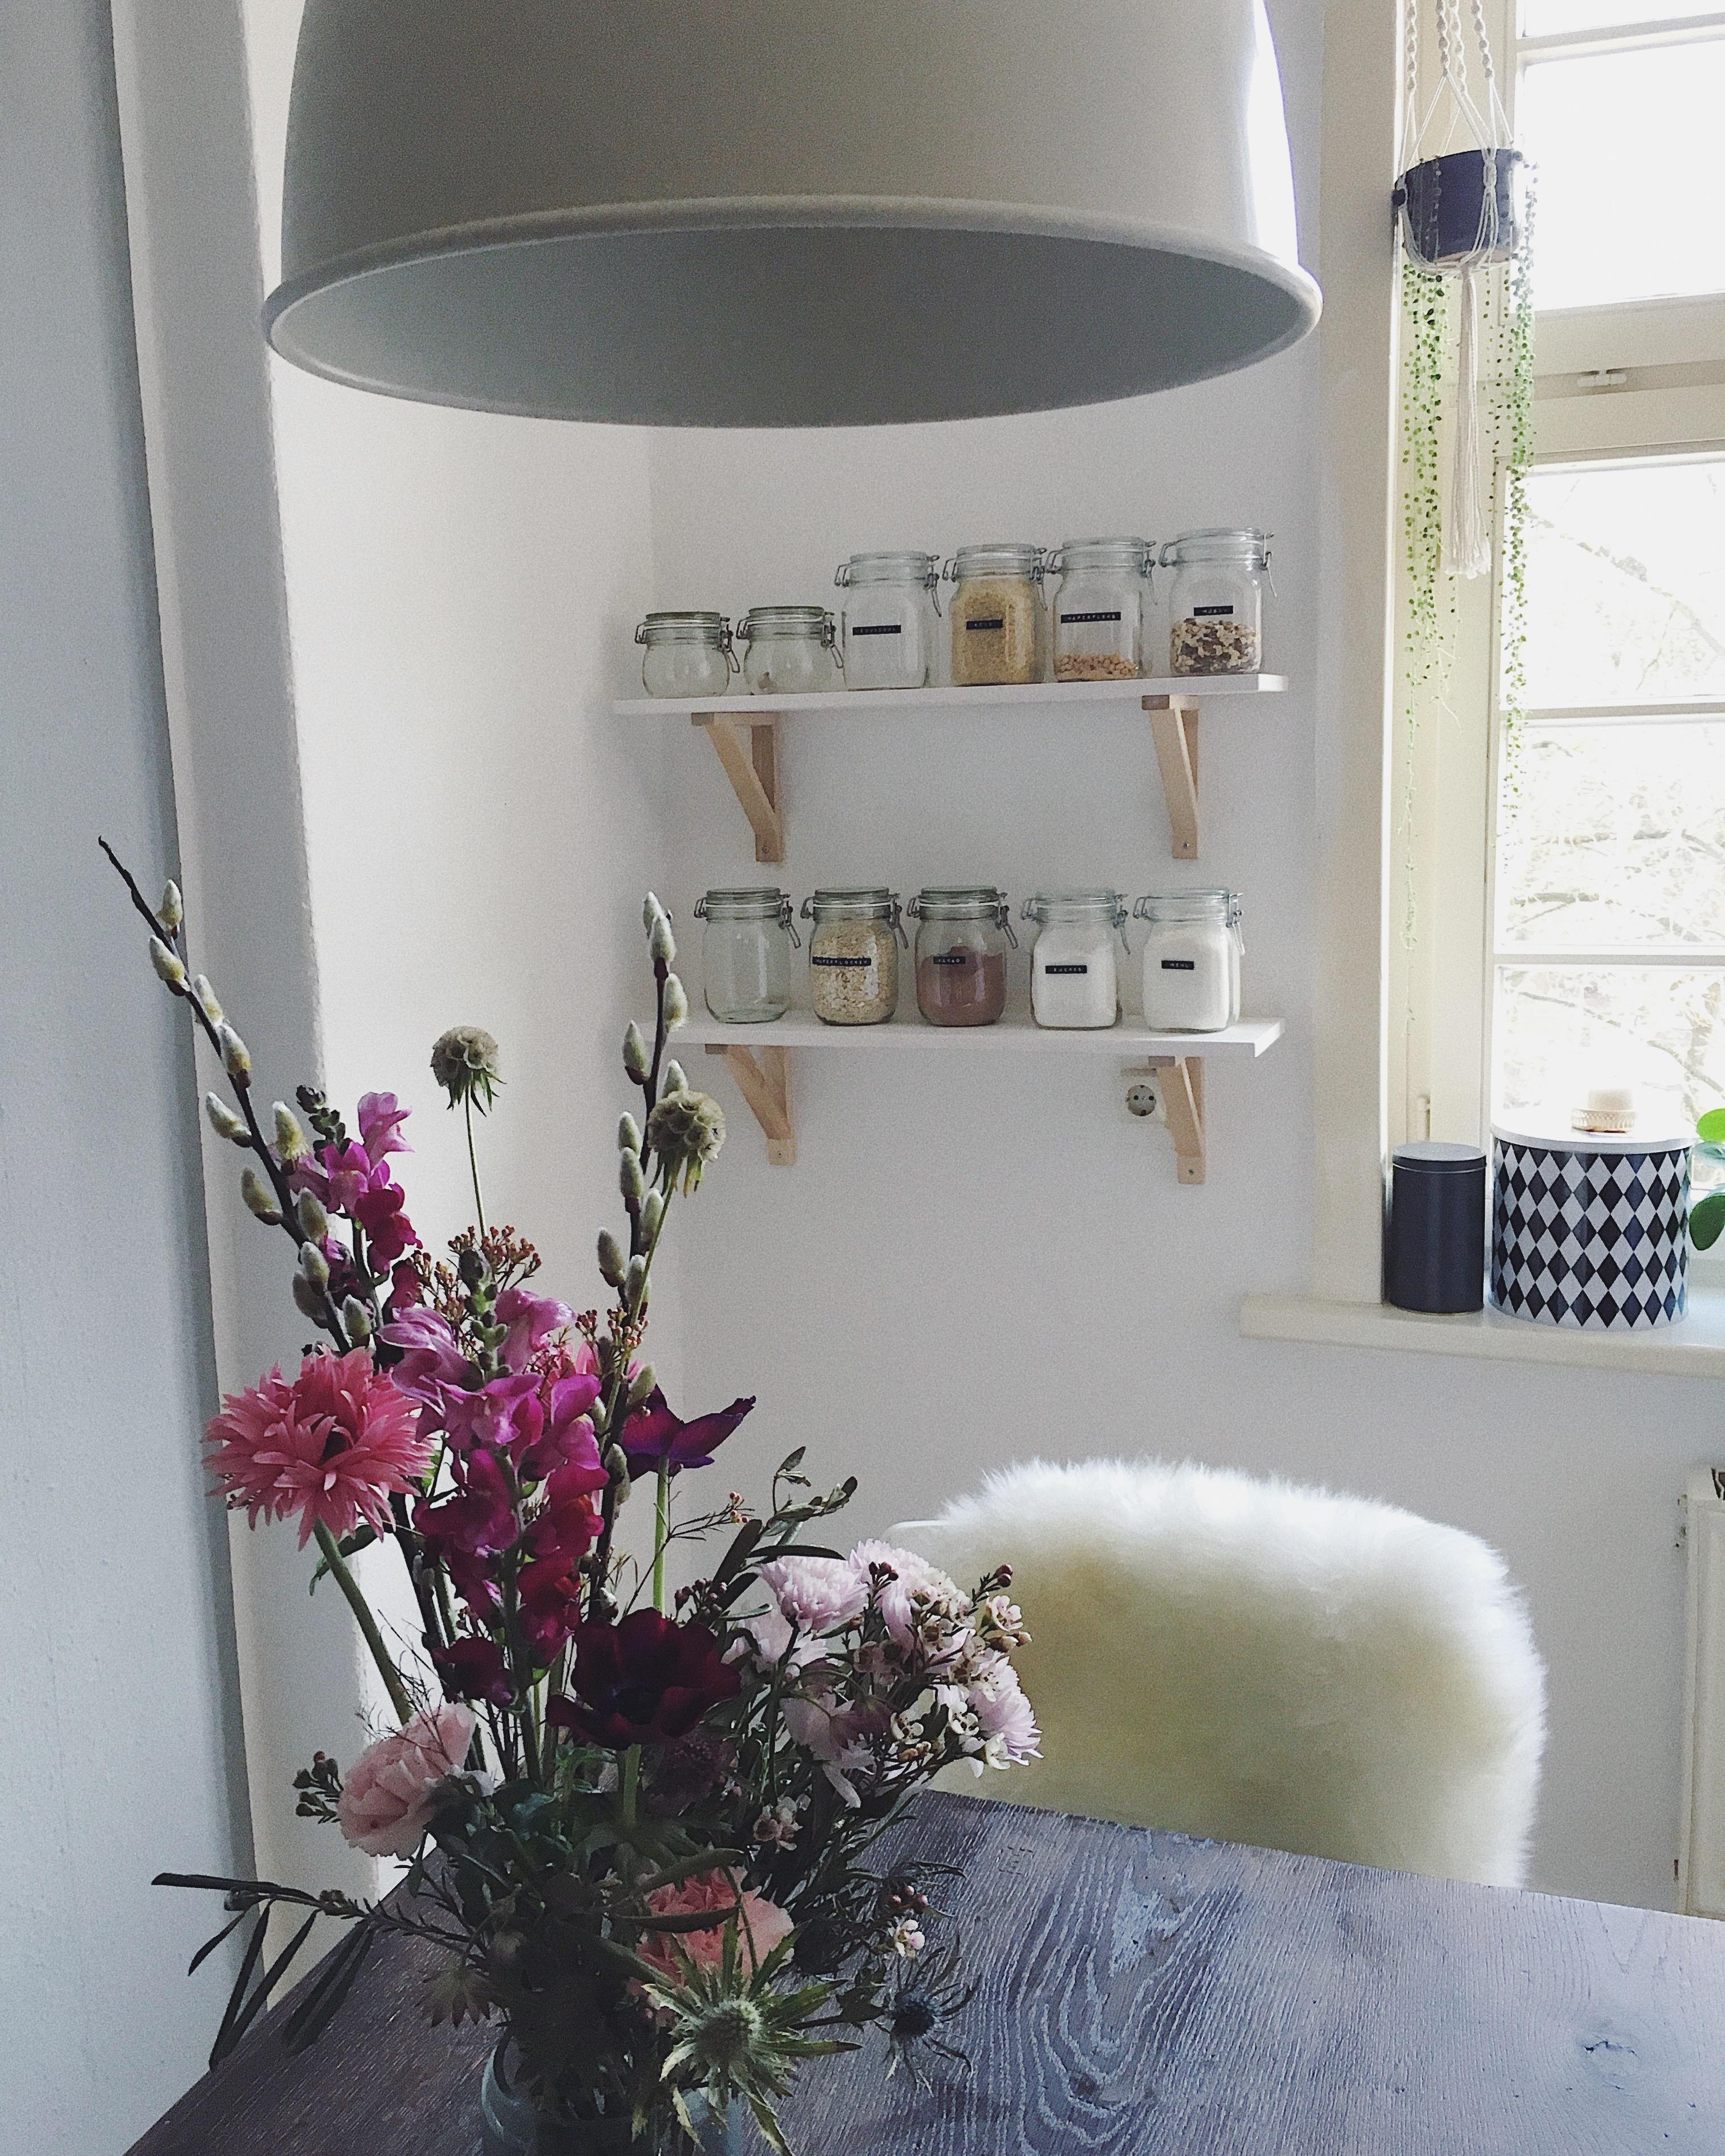 #hygge #kitchen #küche #scandistyle #vintagehome #flowers #interior #planthanger #minimalismus #homesweethome #interior 